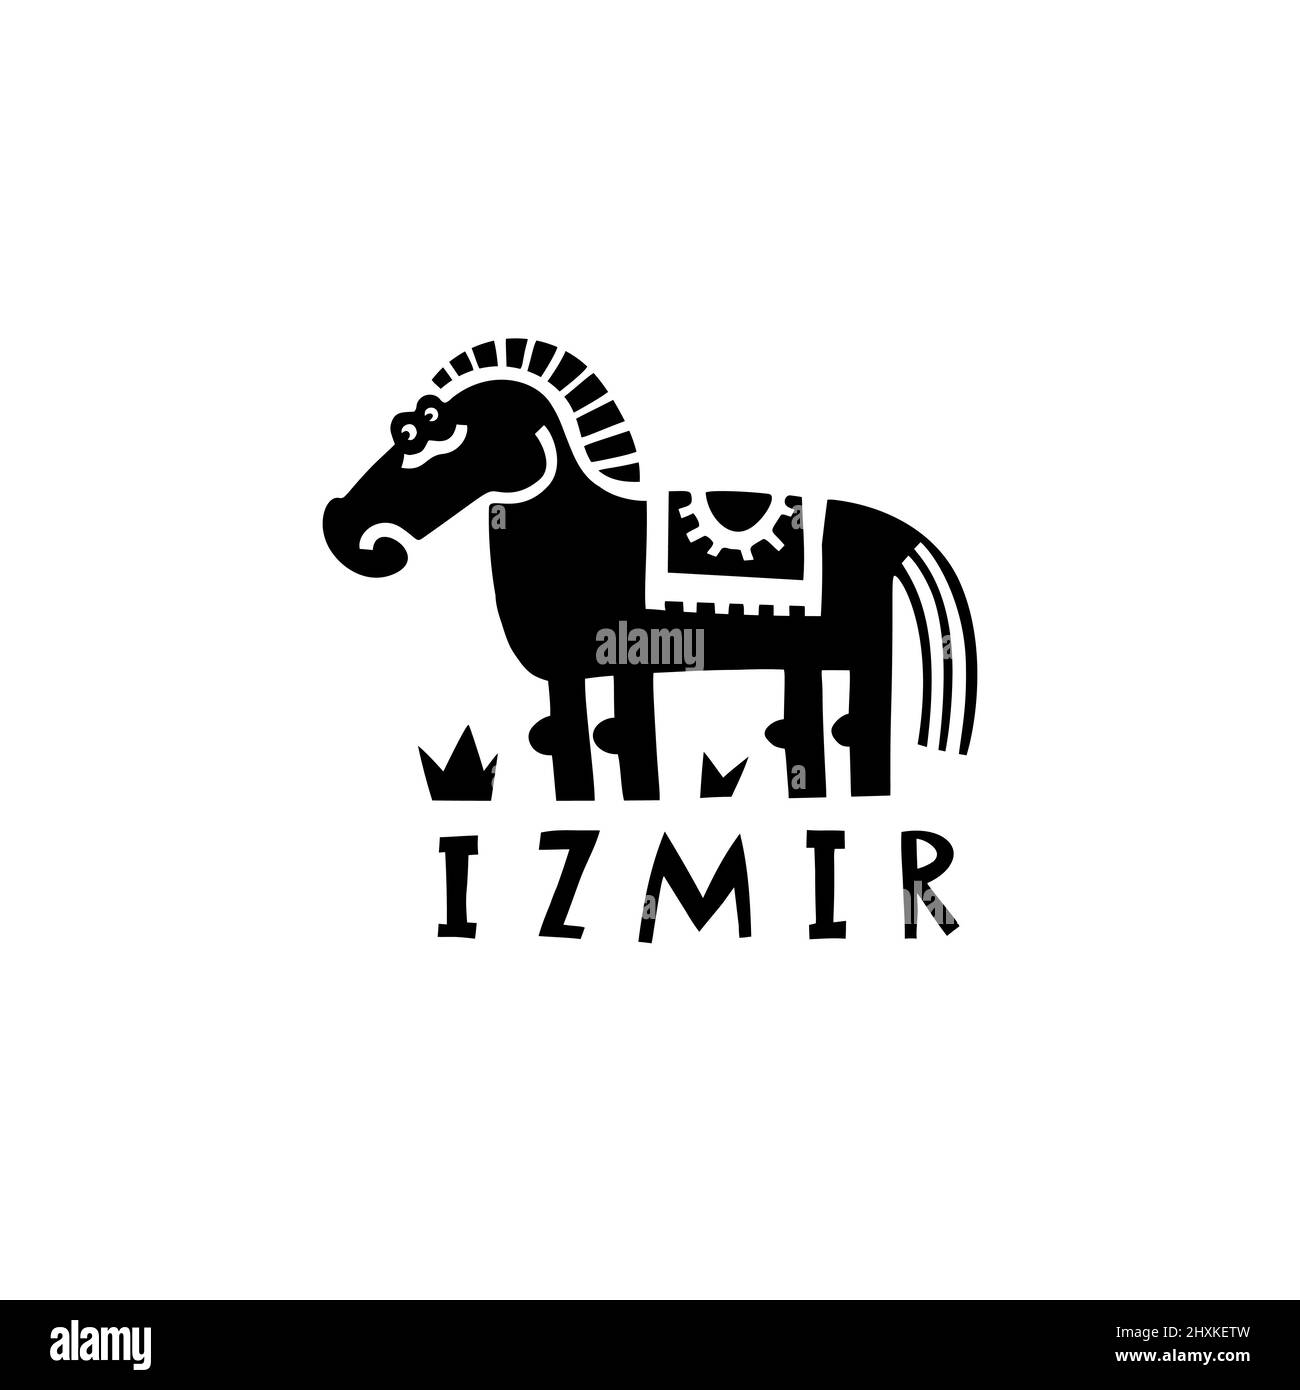 Vettore simbolo disegnato a mano di Izmir. Illustrazione di viaggio della Repubblica di Turchia. Illustrazione del cavallo di troia disegnata a mano. Antica pietra miliare turca Illustrazione Vettoriale